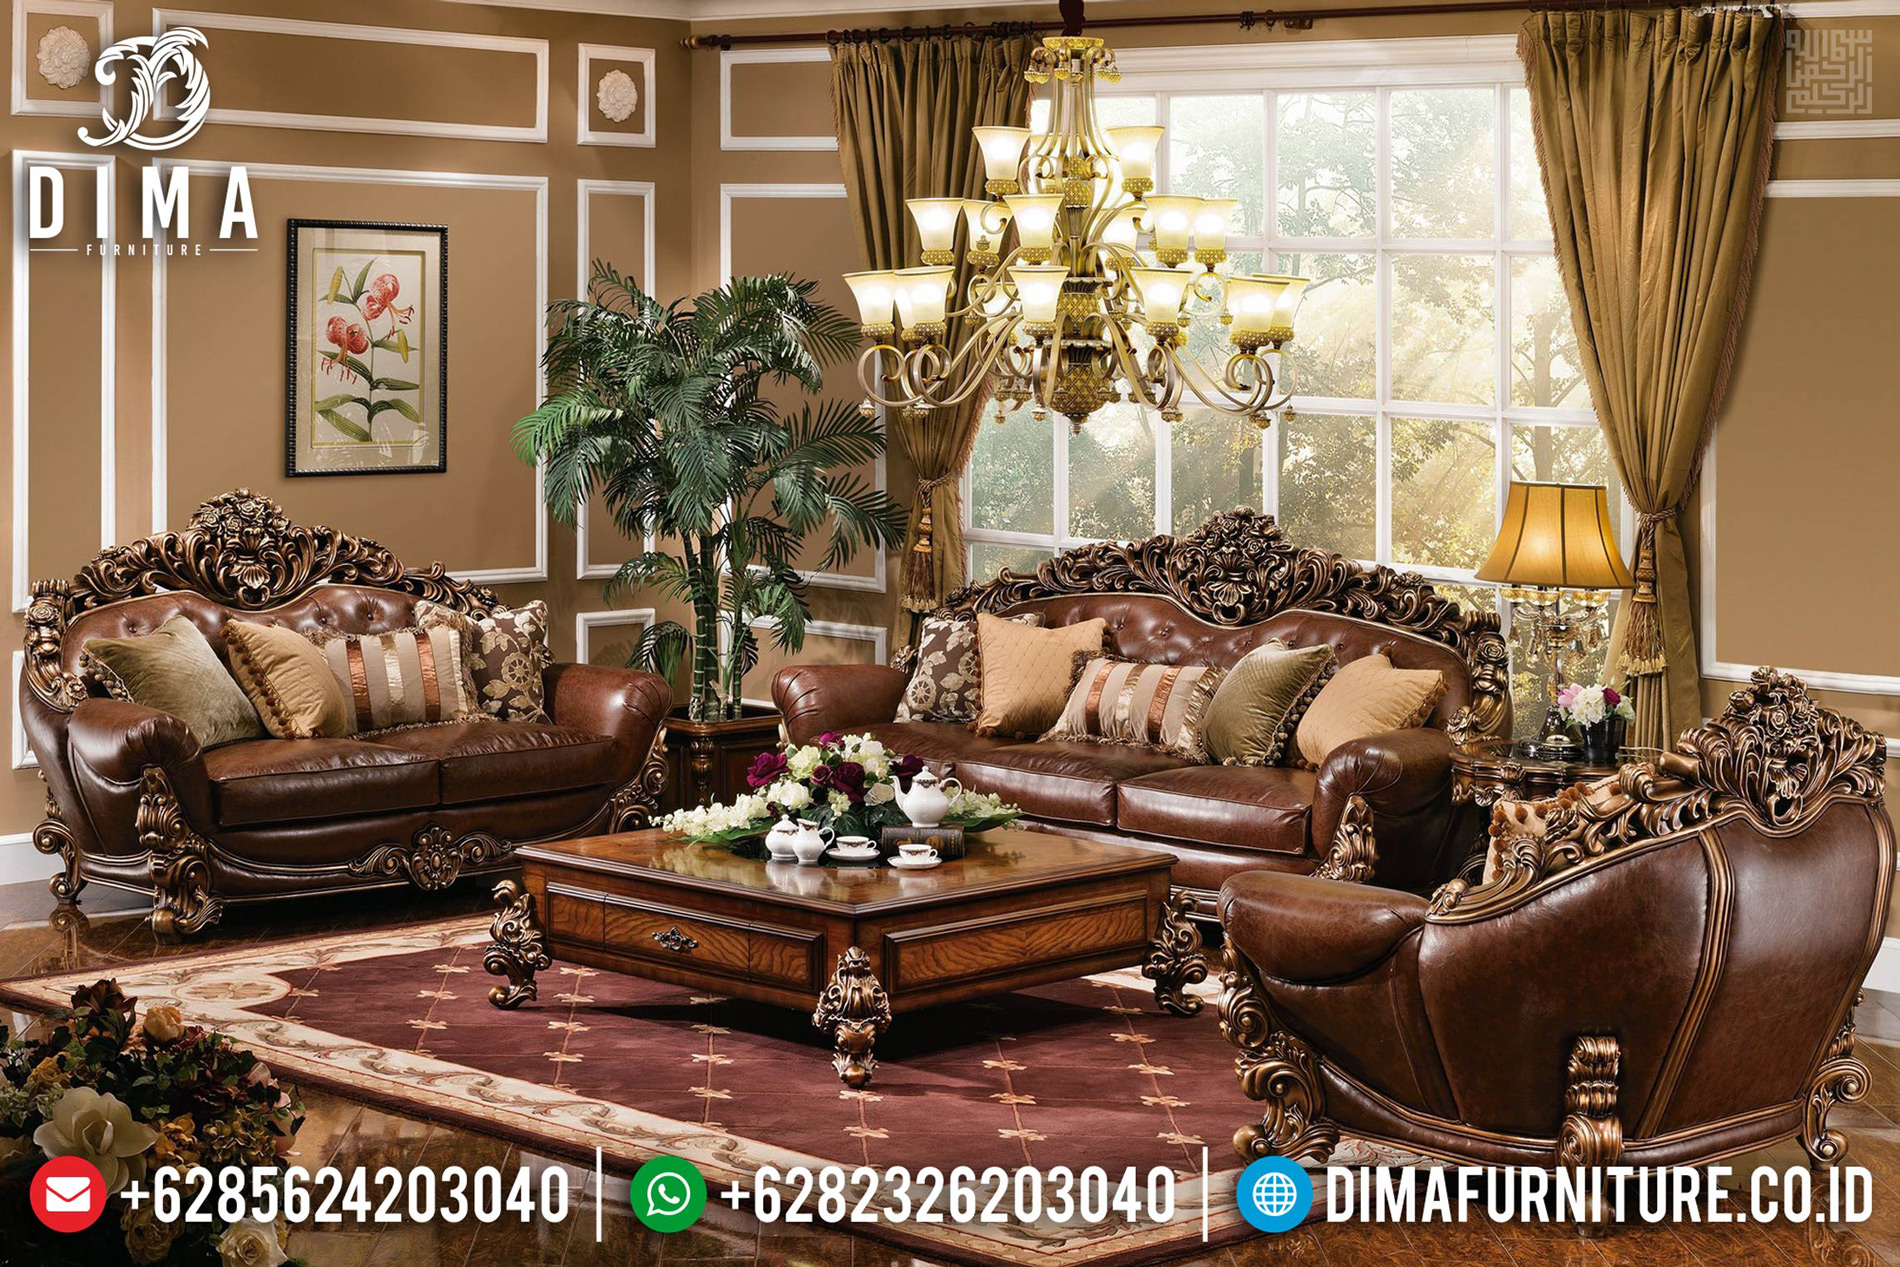 Jual Sofa Tamu Klasik Mewah Furniture Luxury Royals Ukiran Jepara BT-0642